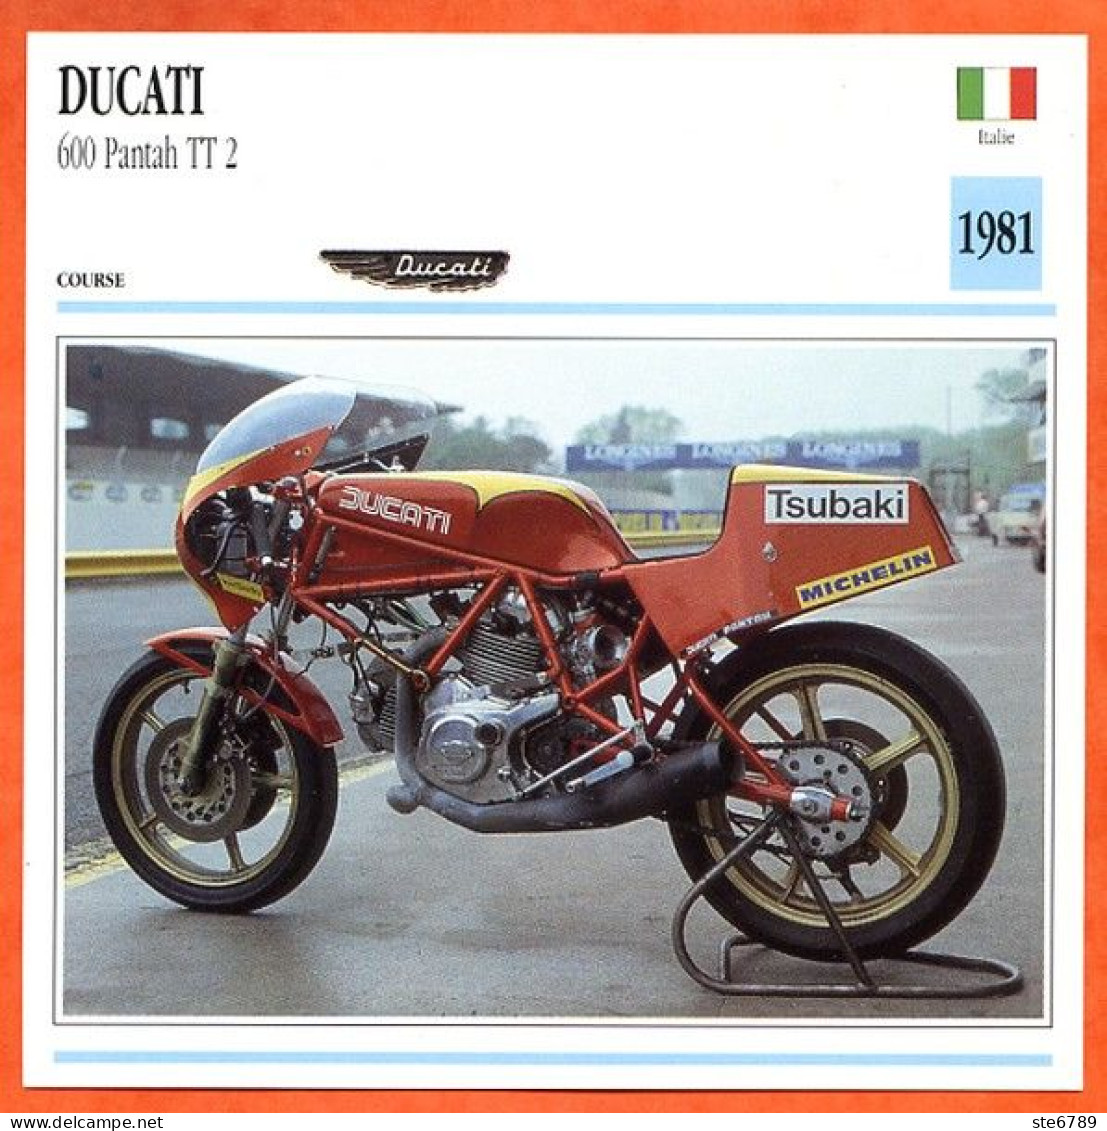 DUCATI 600 Pantah TT2 1981 Italie Fiche Technique Moto - Deportes